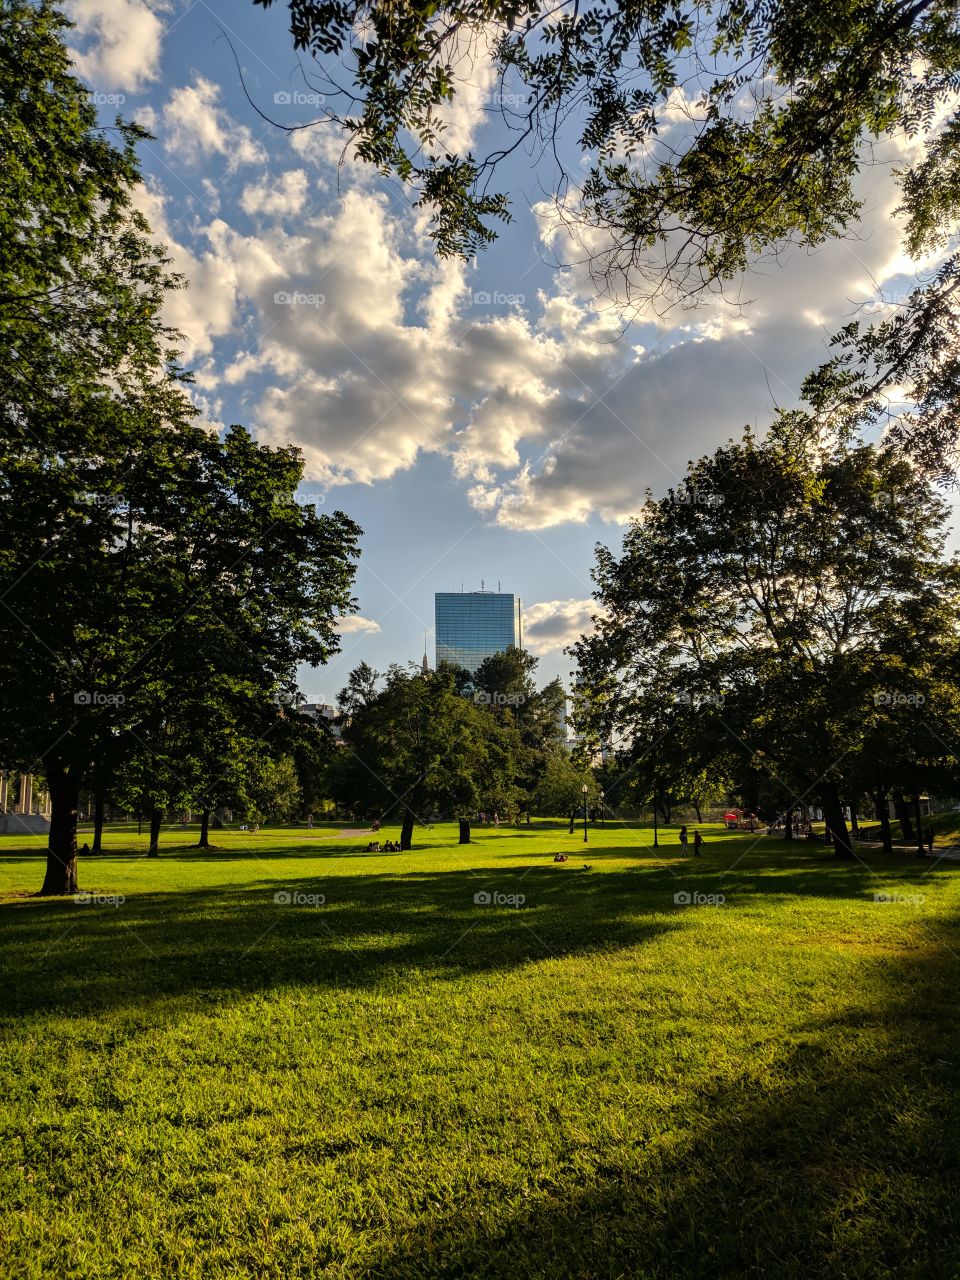 Gorgeous day in Boston Common.